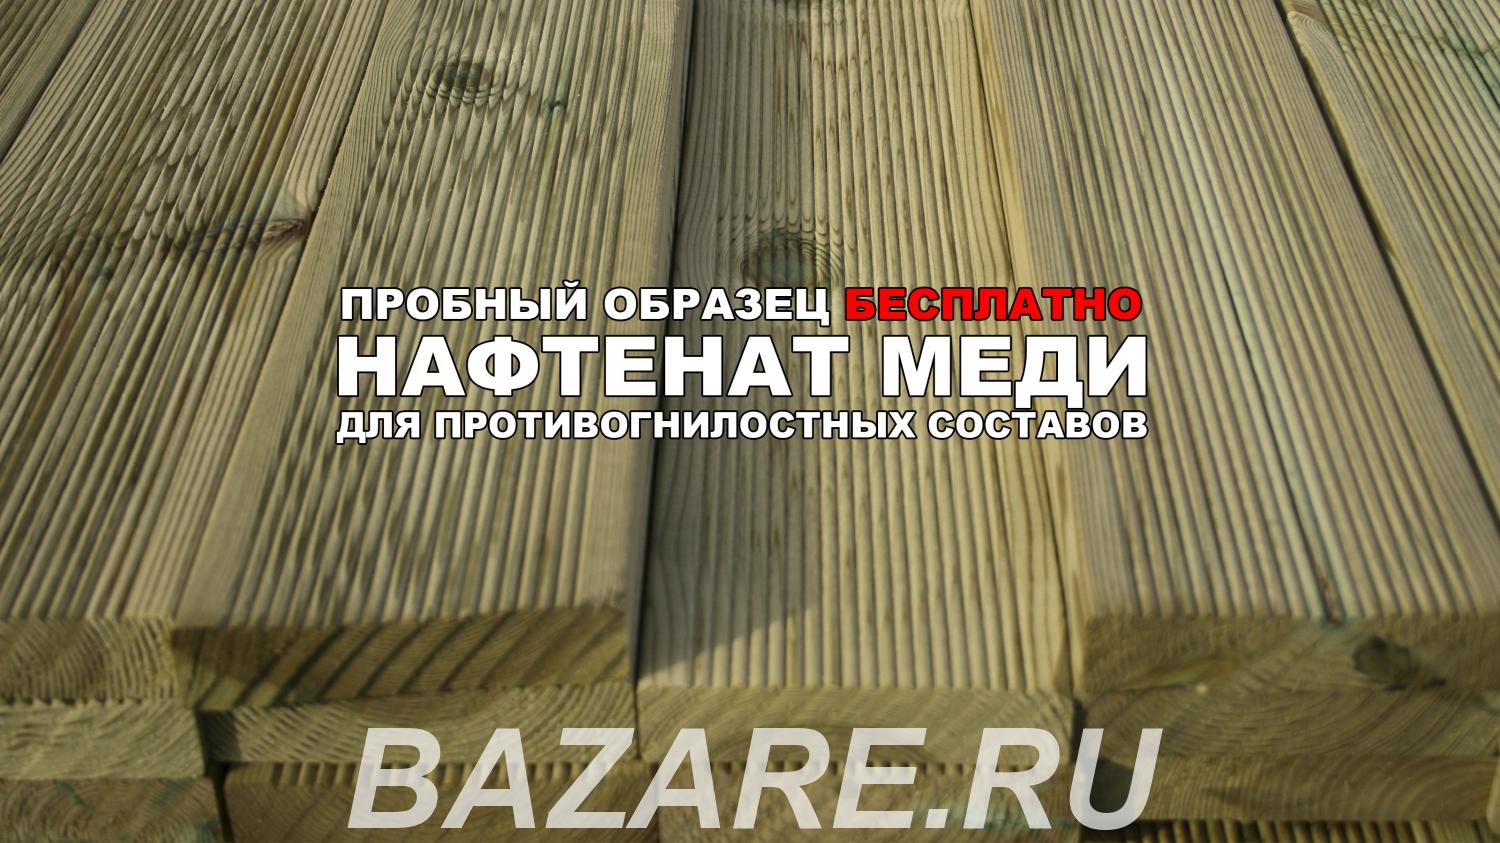 Противогнилостный защитный состав для пропитки древесины,  Новосибирск